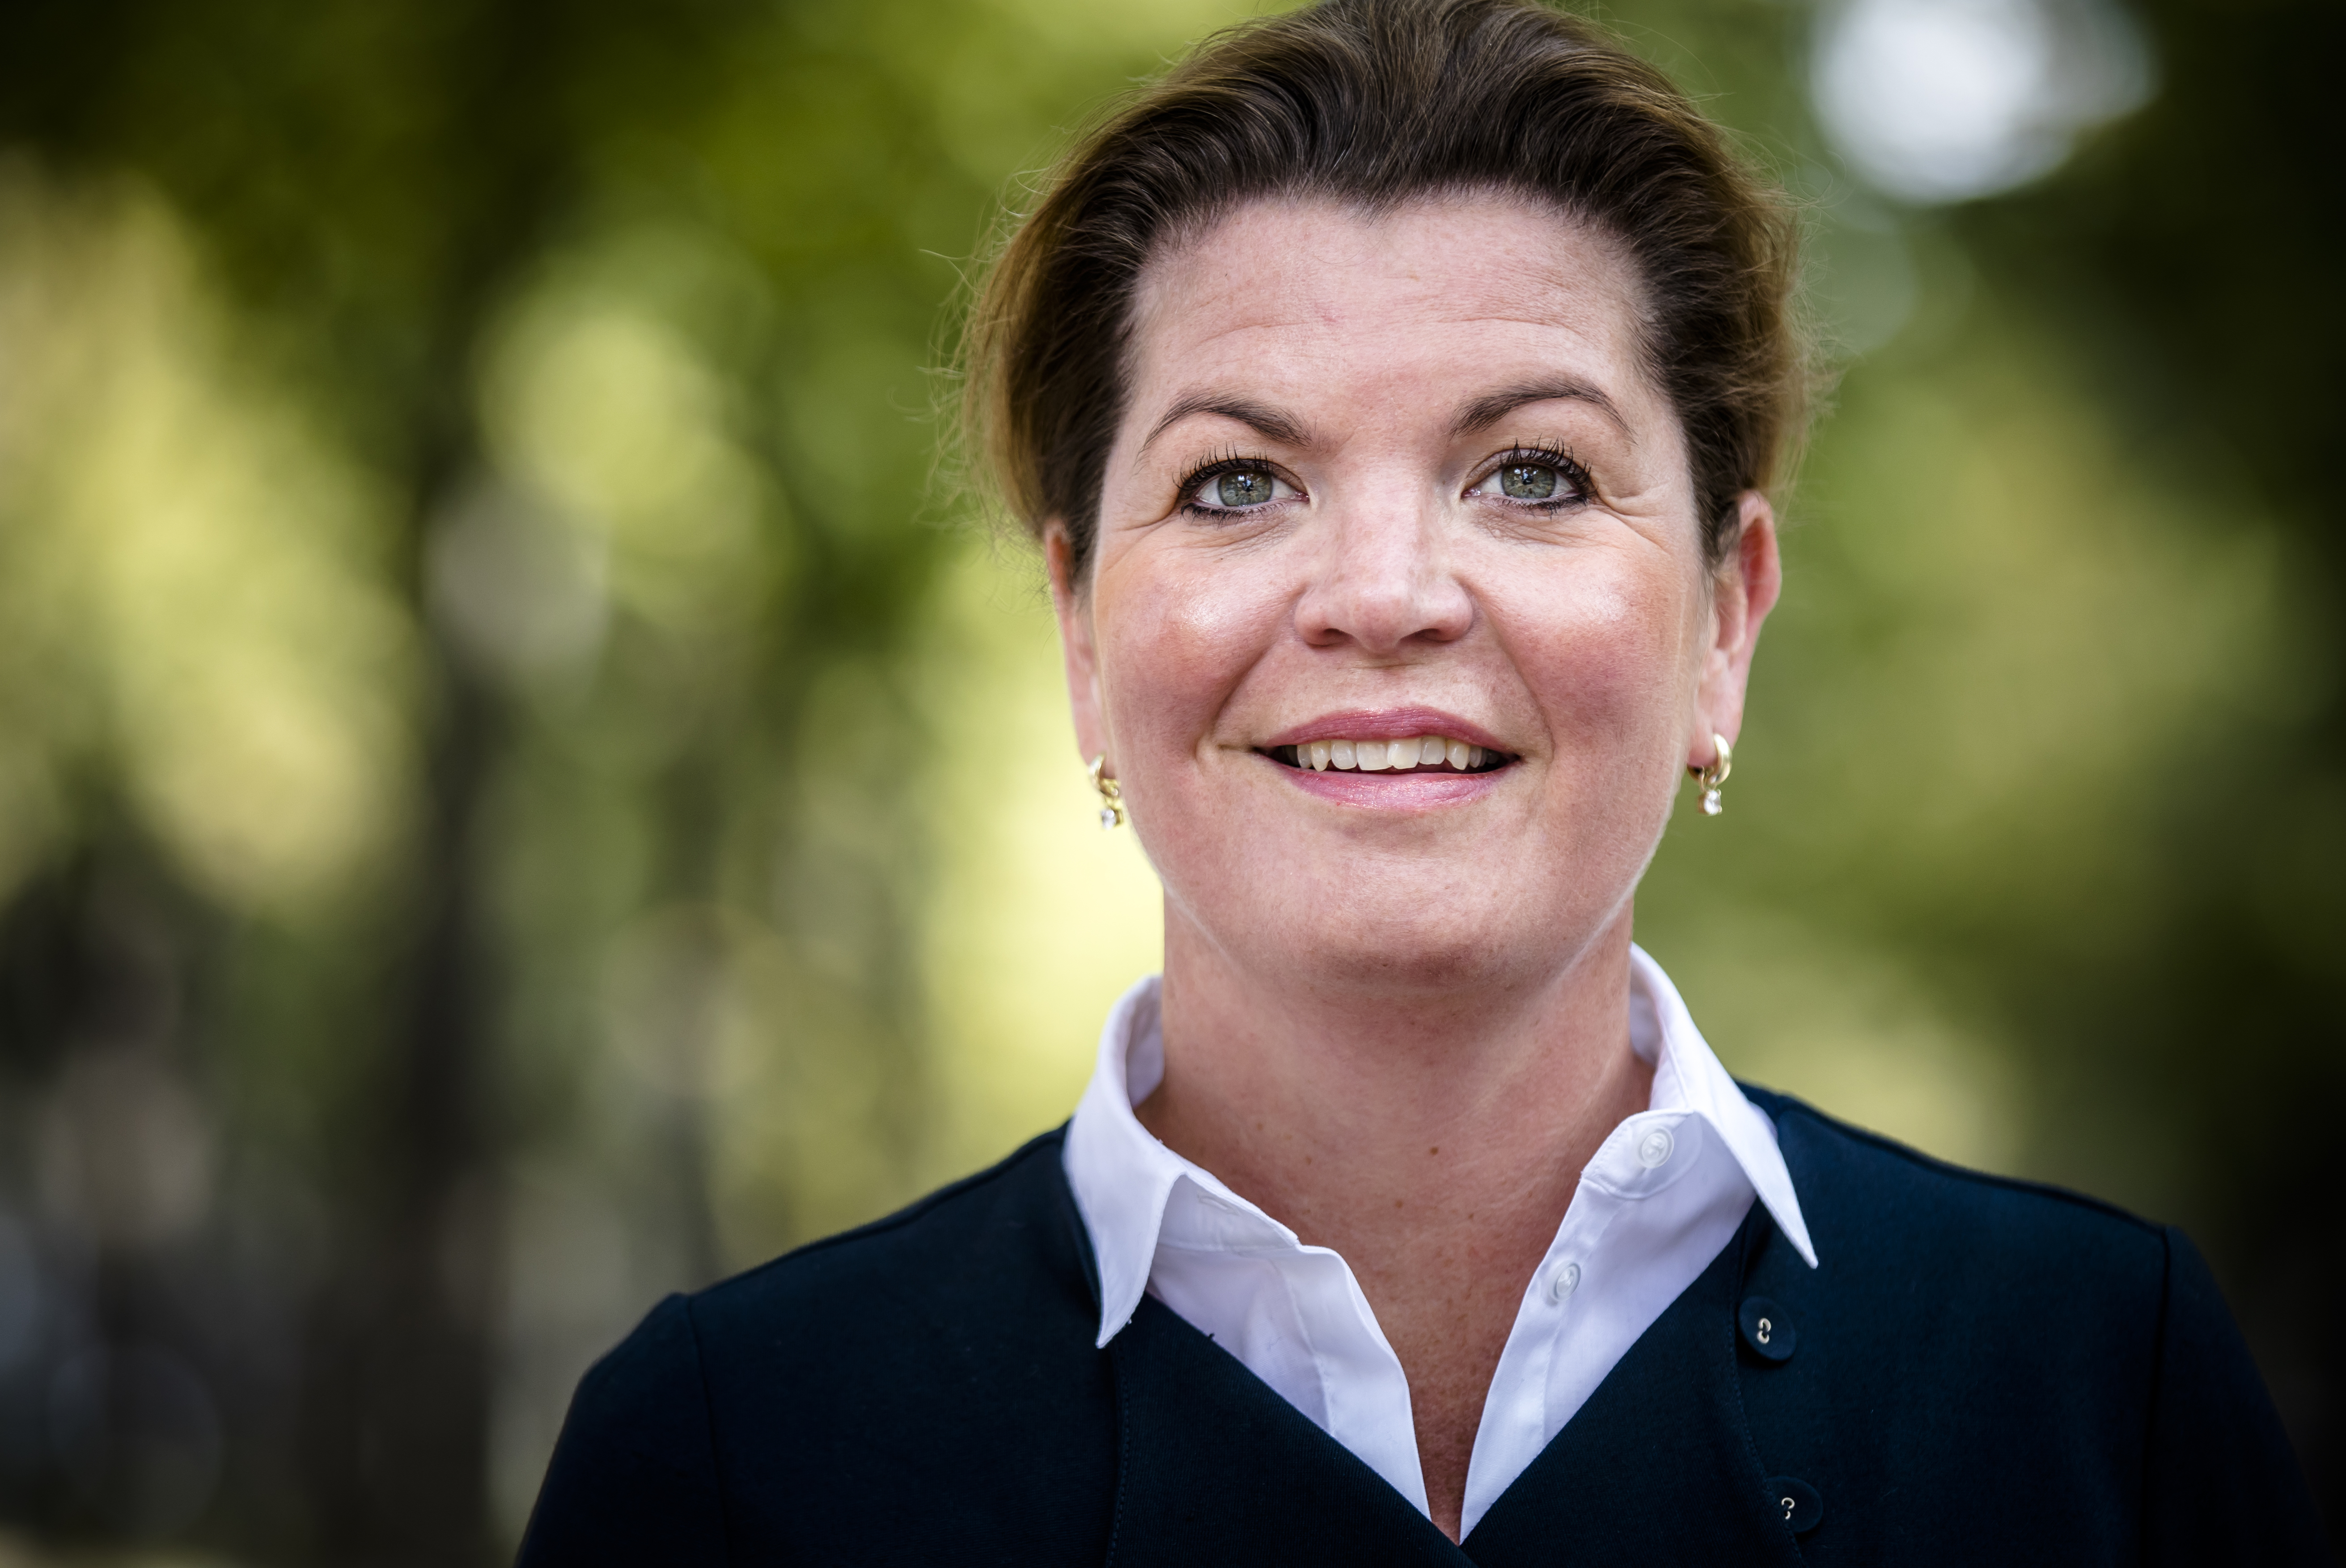 2017-09-20 12:50:39 DEN HAAG - Portret van Christianne van der Wal. Zij zit in het hoofdbestuur van de VVD en is lijsttrekker voor die partij bij de gemeenteraadsverkiezingen in Harderwijk. ANP BART MAAT